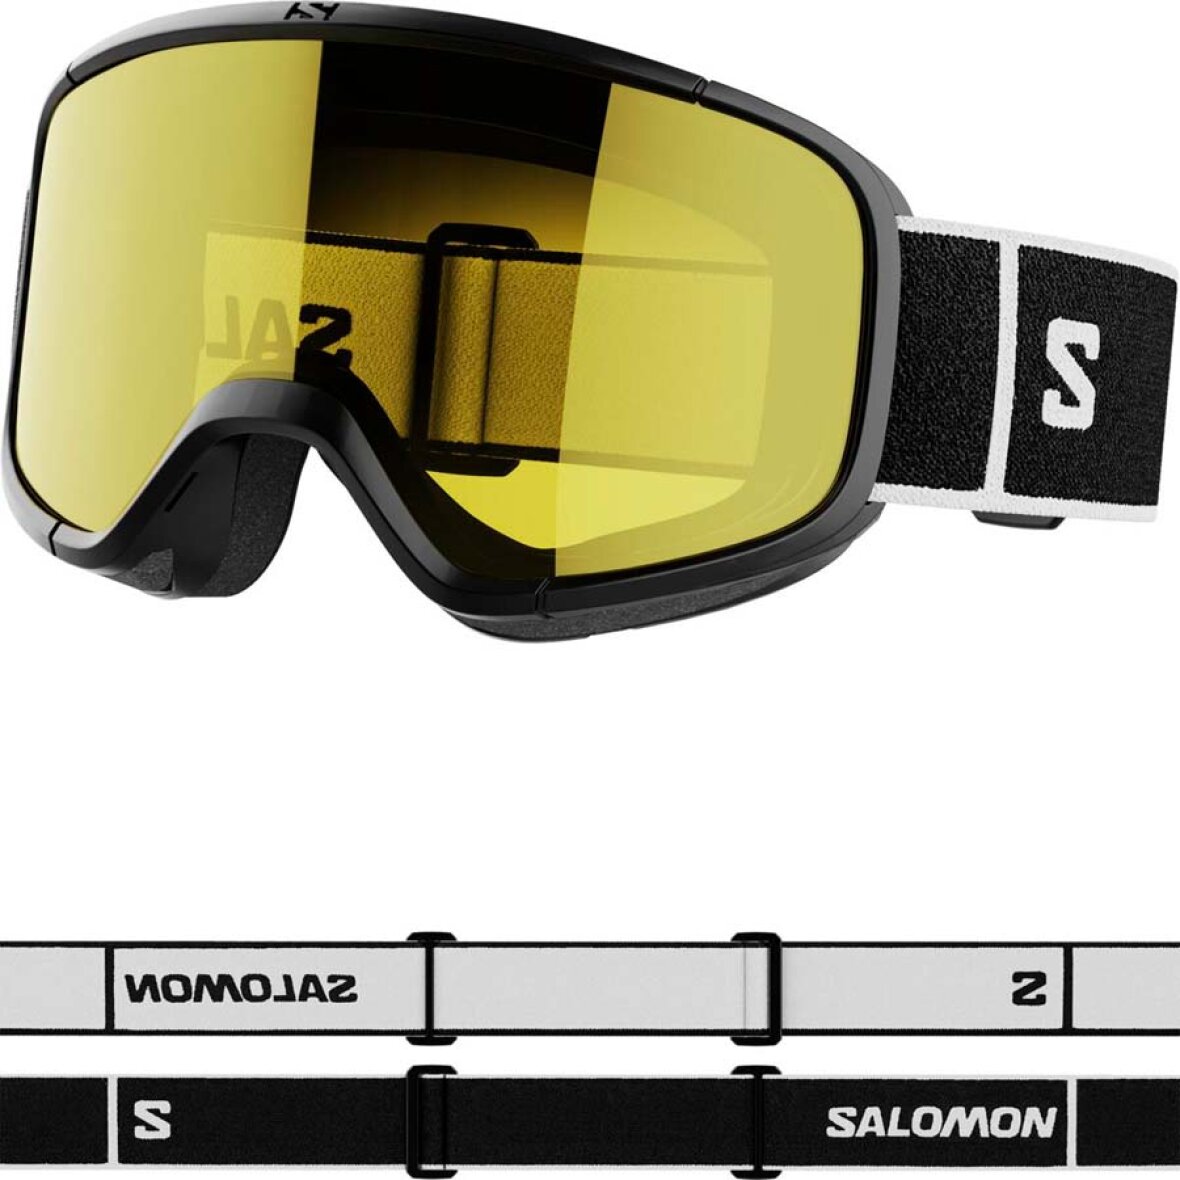 Skibriller gule glas fra Salomon - 2,0 Access. Køb her!